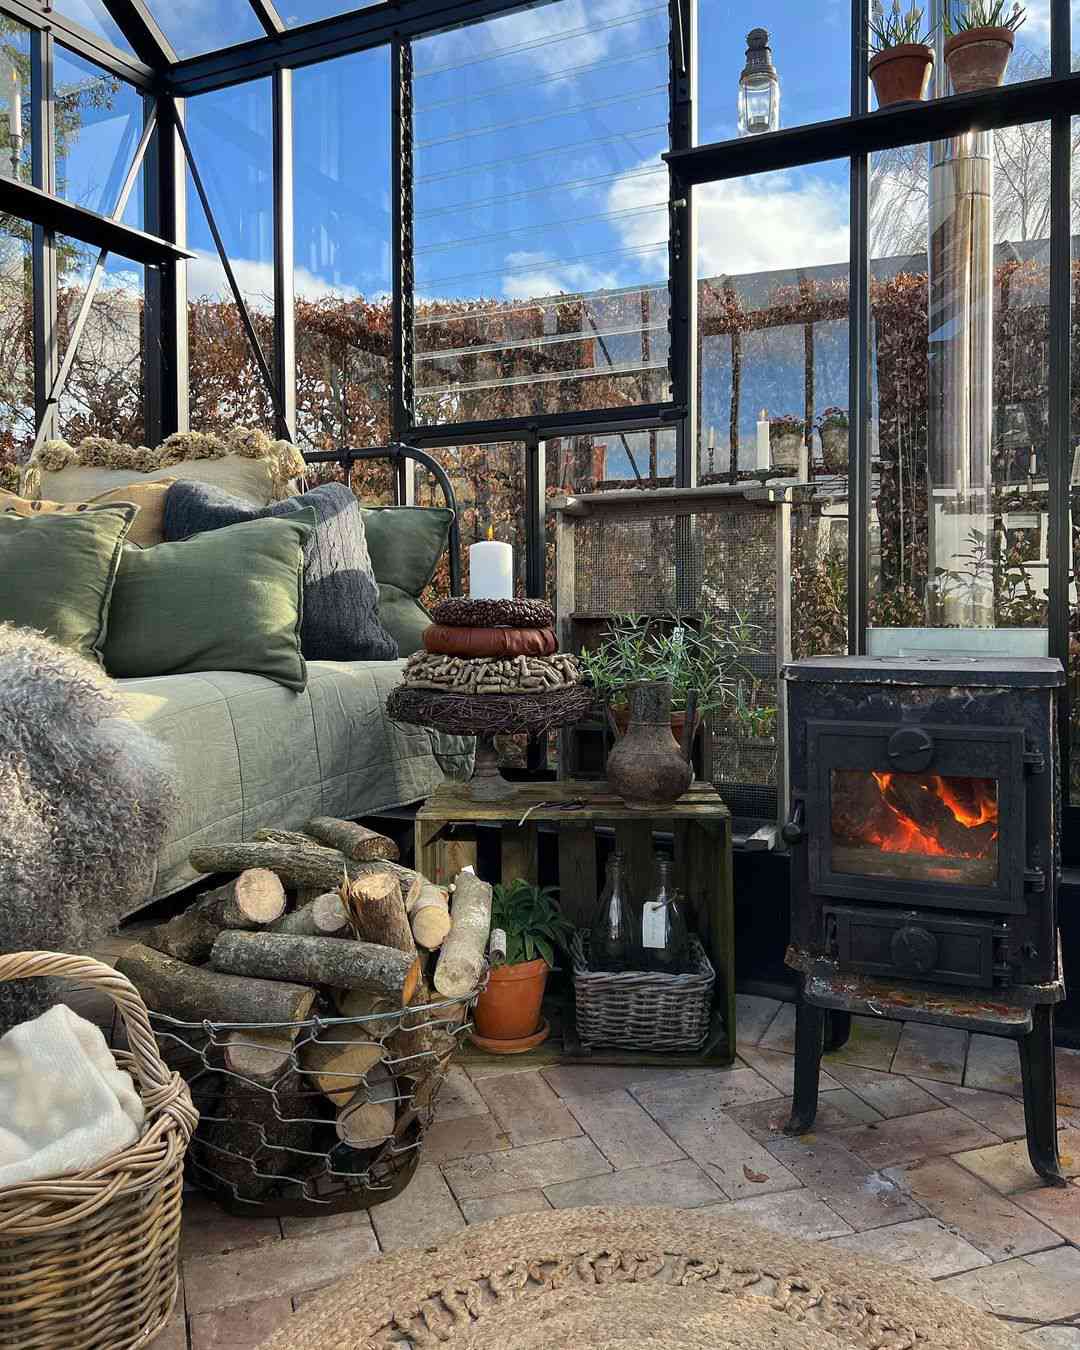 Acogedor invernadero con paredes de cristal, sofá cama y estufa de leña con cesta de leña